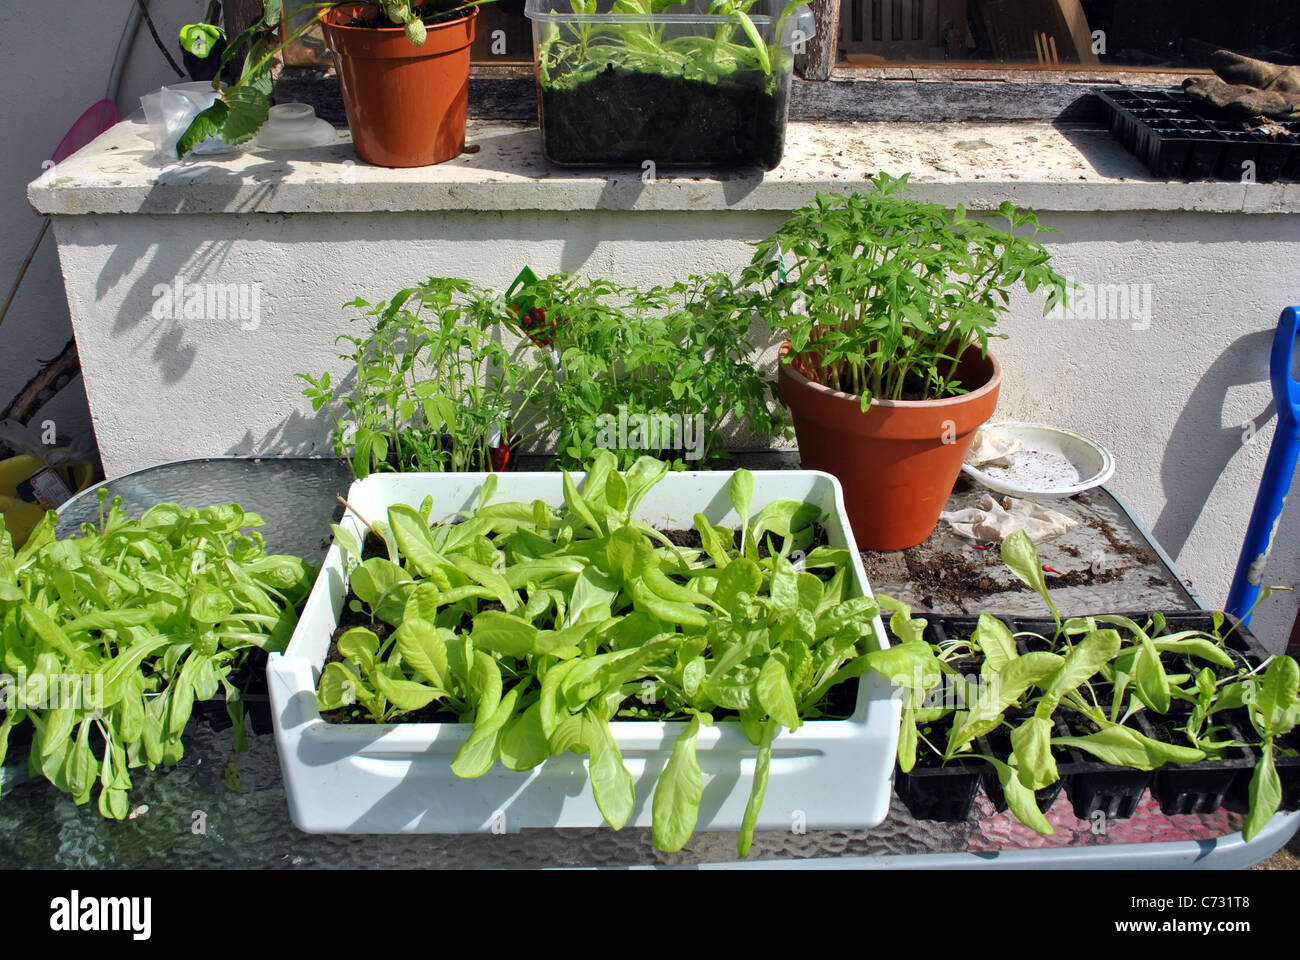 Giardinieri di vegetali stazione di lavoro Foto Stock